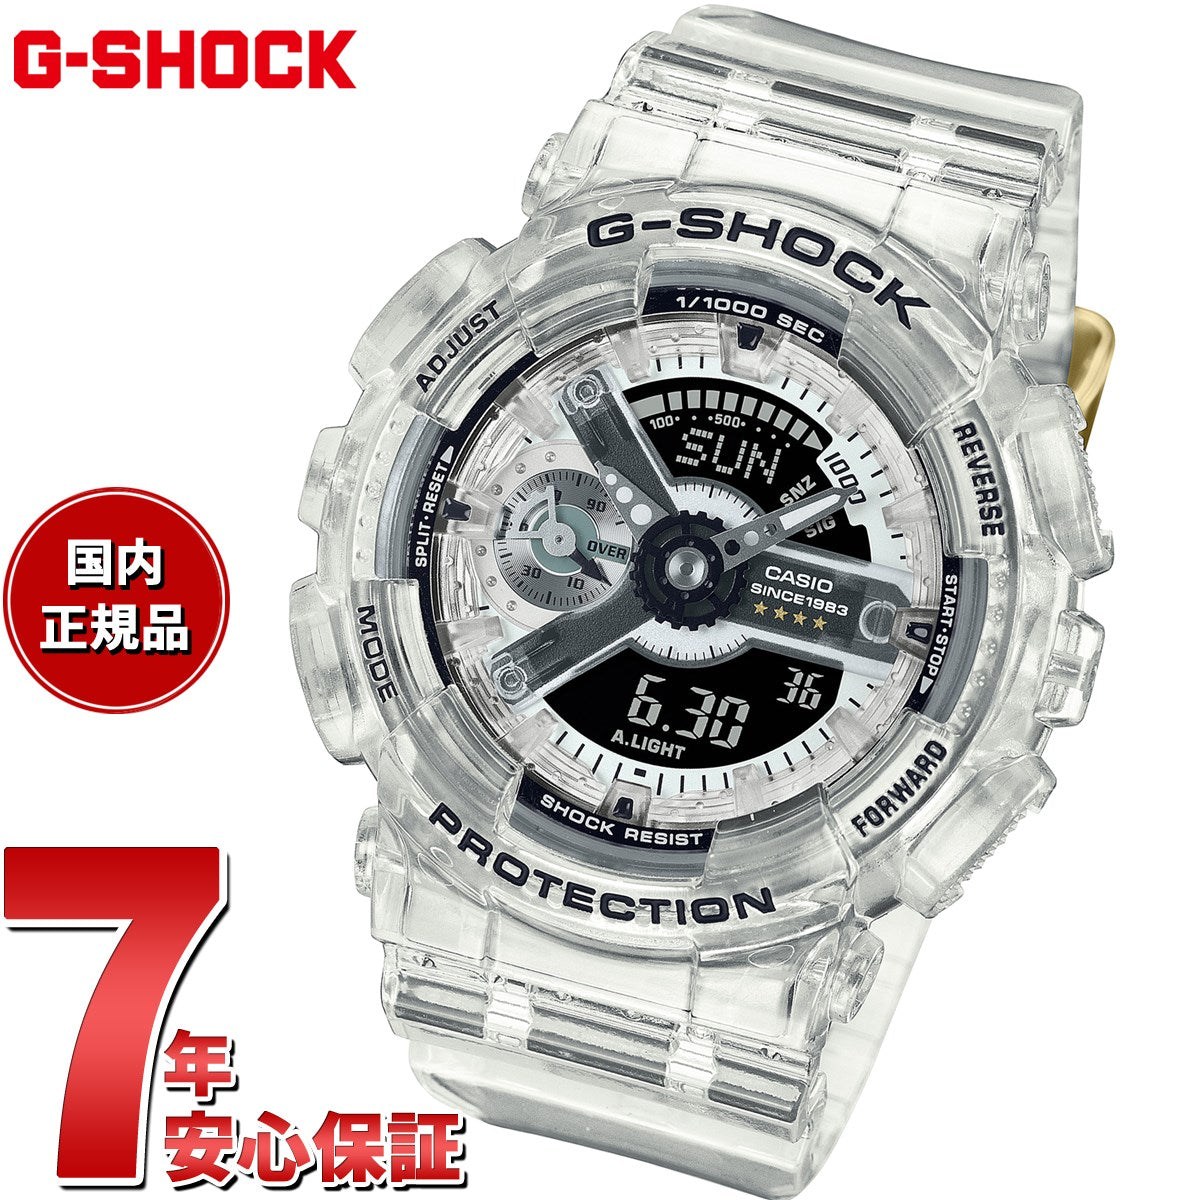 【新品】カシオ CASIO G-SHOCK 腕時計 ユニセックス GMA-S114RX-7ADR Gショック クオーツ ブラック/シルバーxスケルトン アナデジ表示